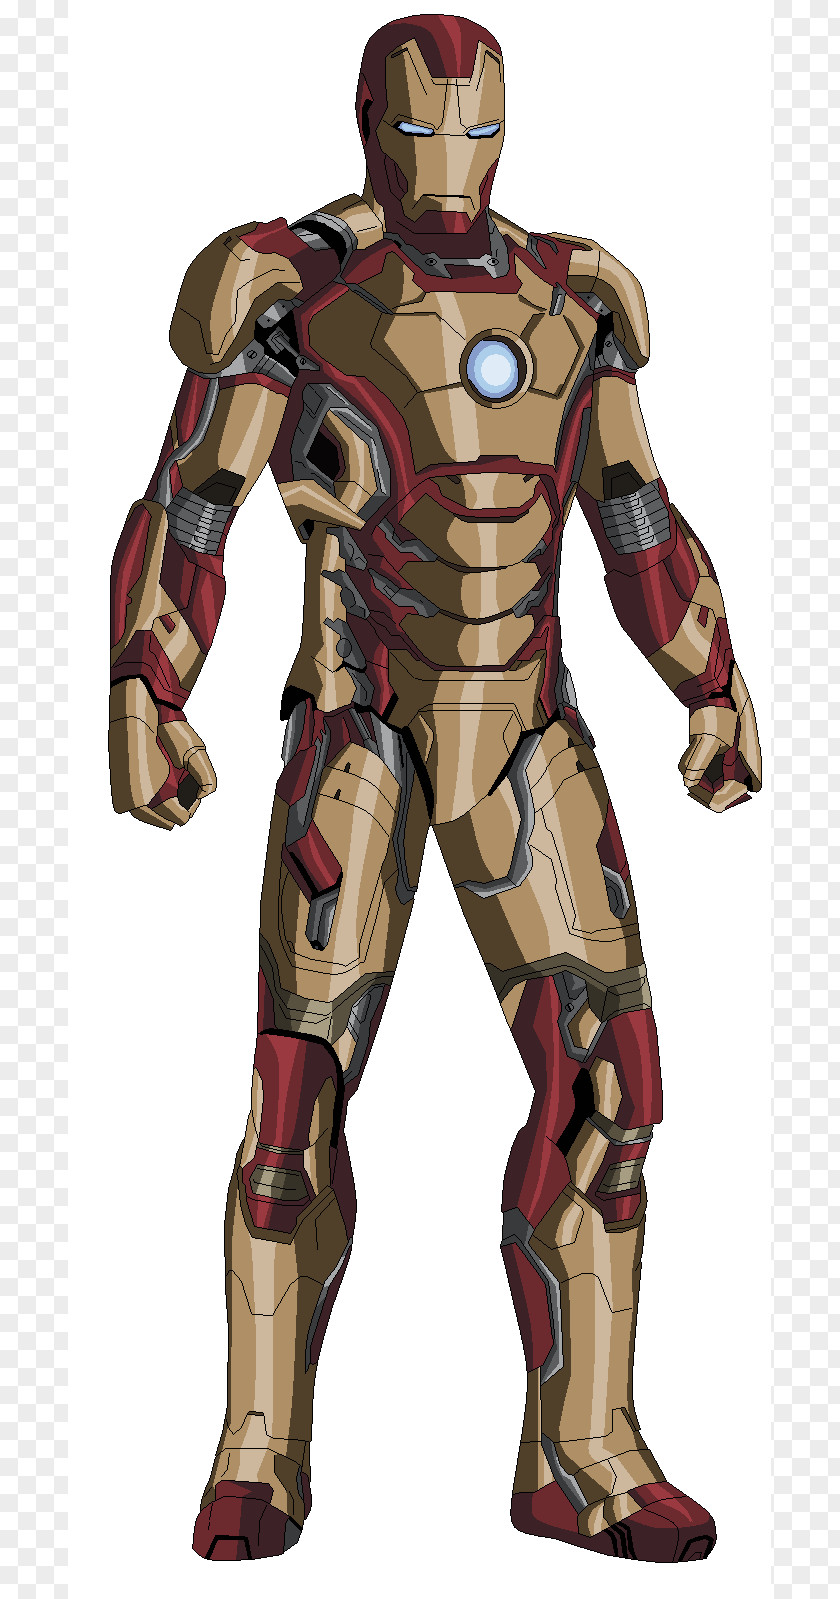 Ironman The Iron Man Ultron Superhero PNG